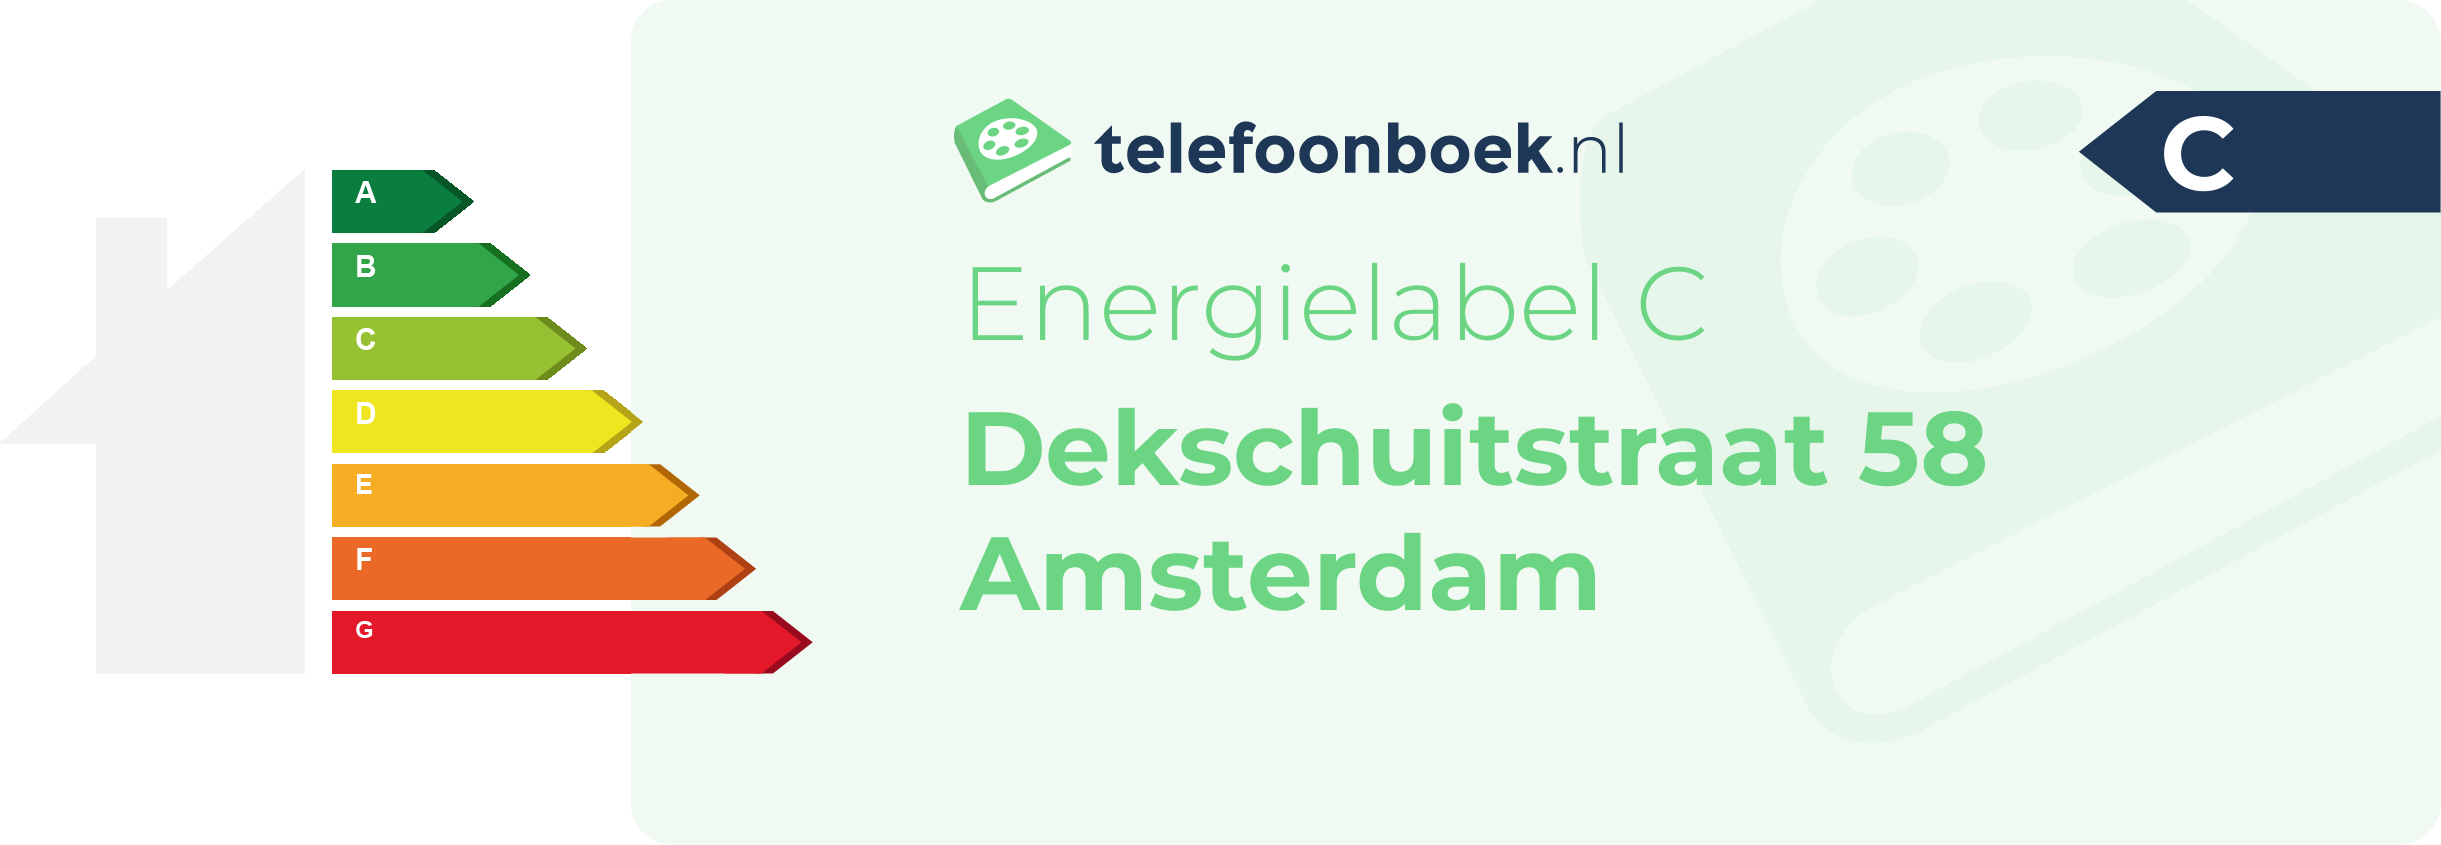 Energielabel Dekschuitstraat 58 Amsterdam